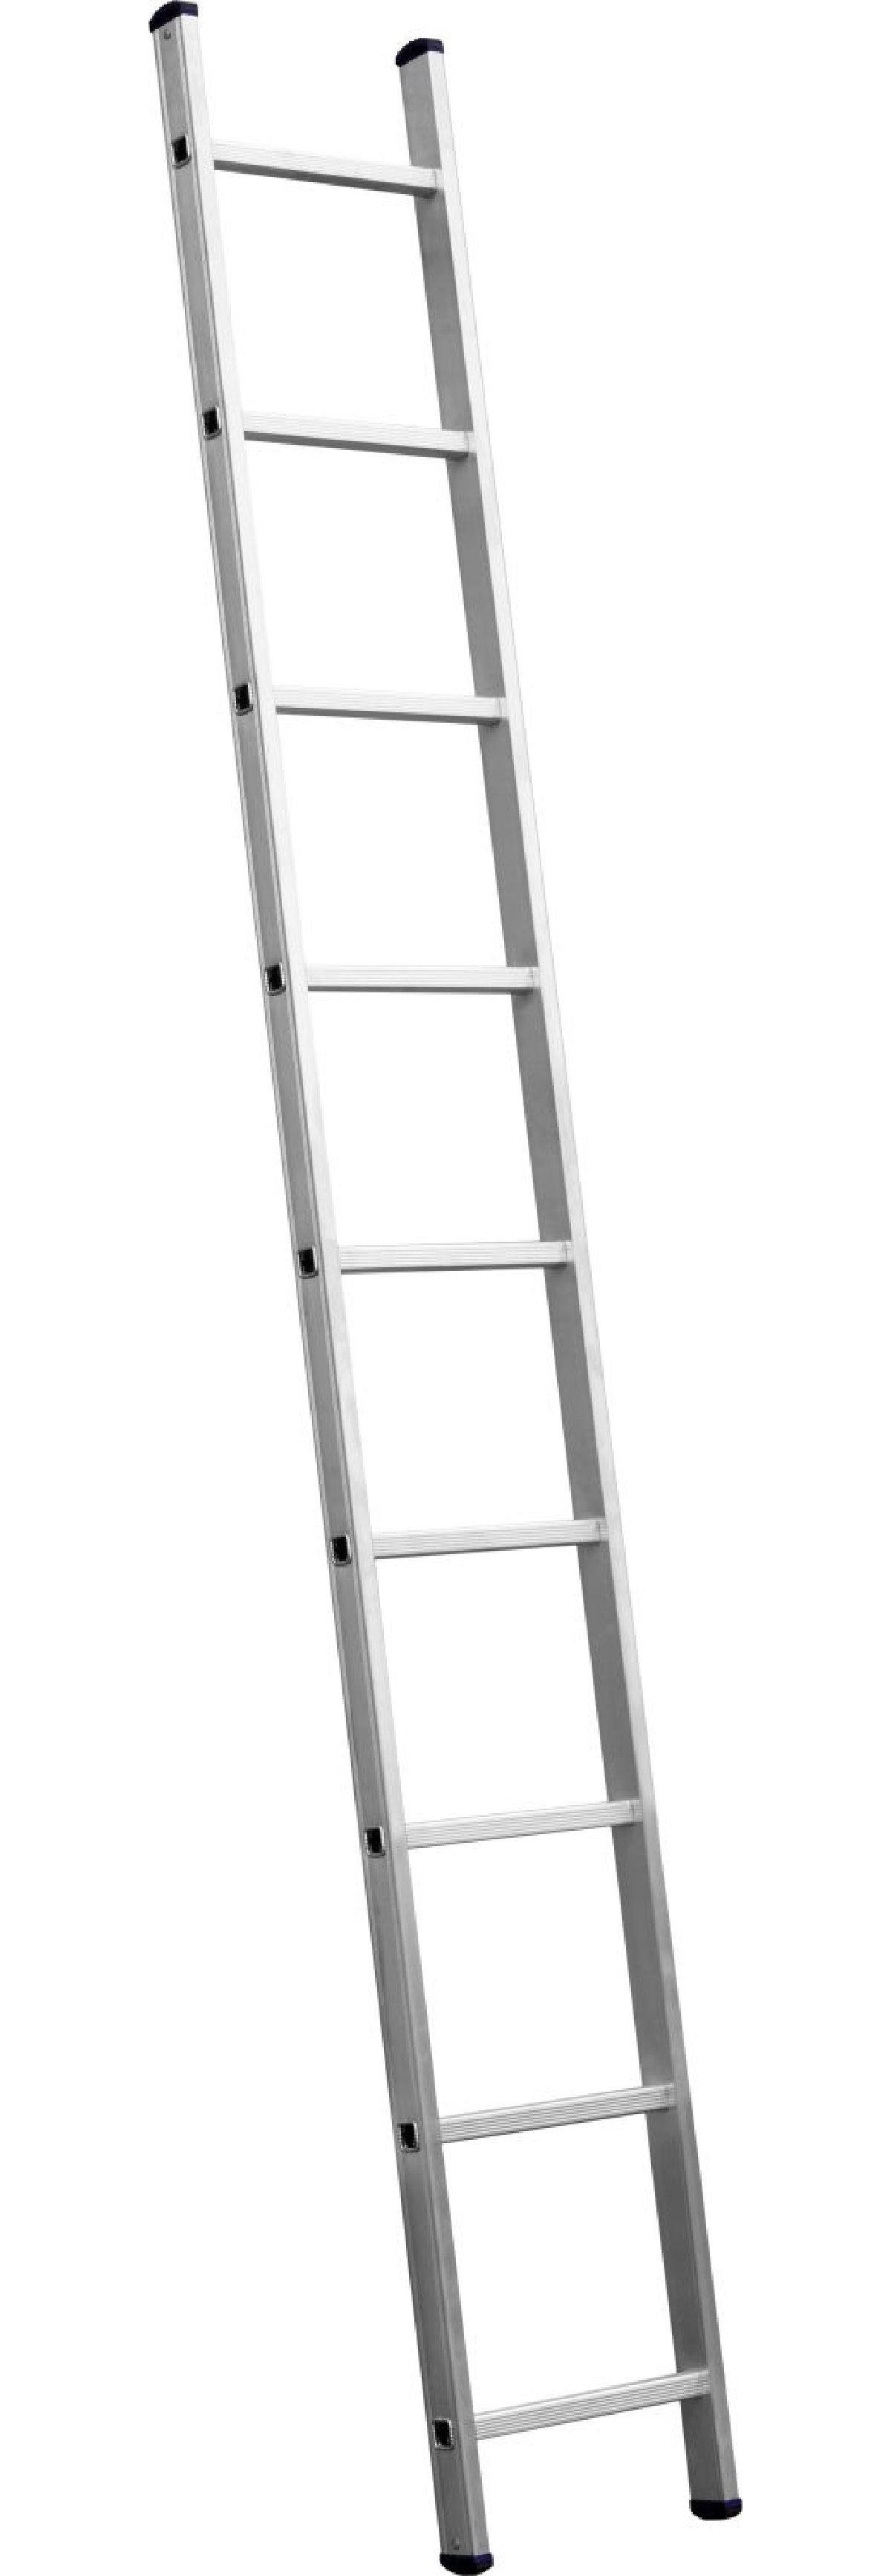 Приставная лестница СИБИН, односекционная, алюминиевая, 10 ступеней, высота 279 см, (38834-10)